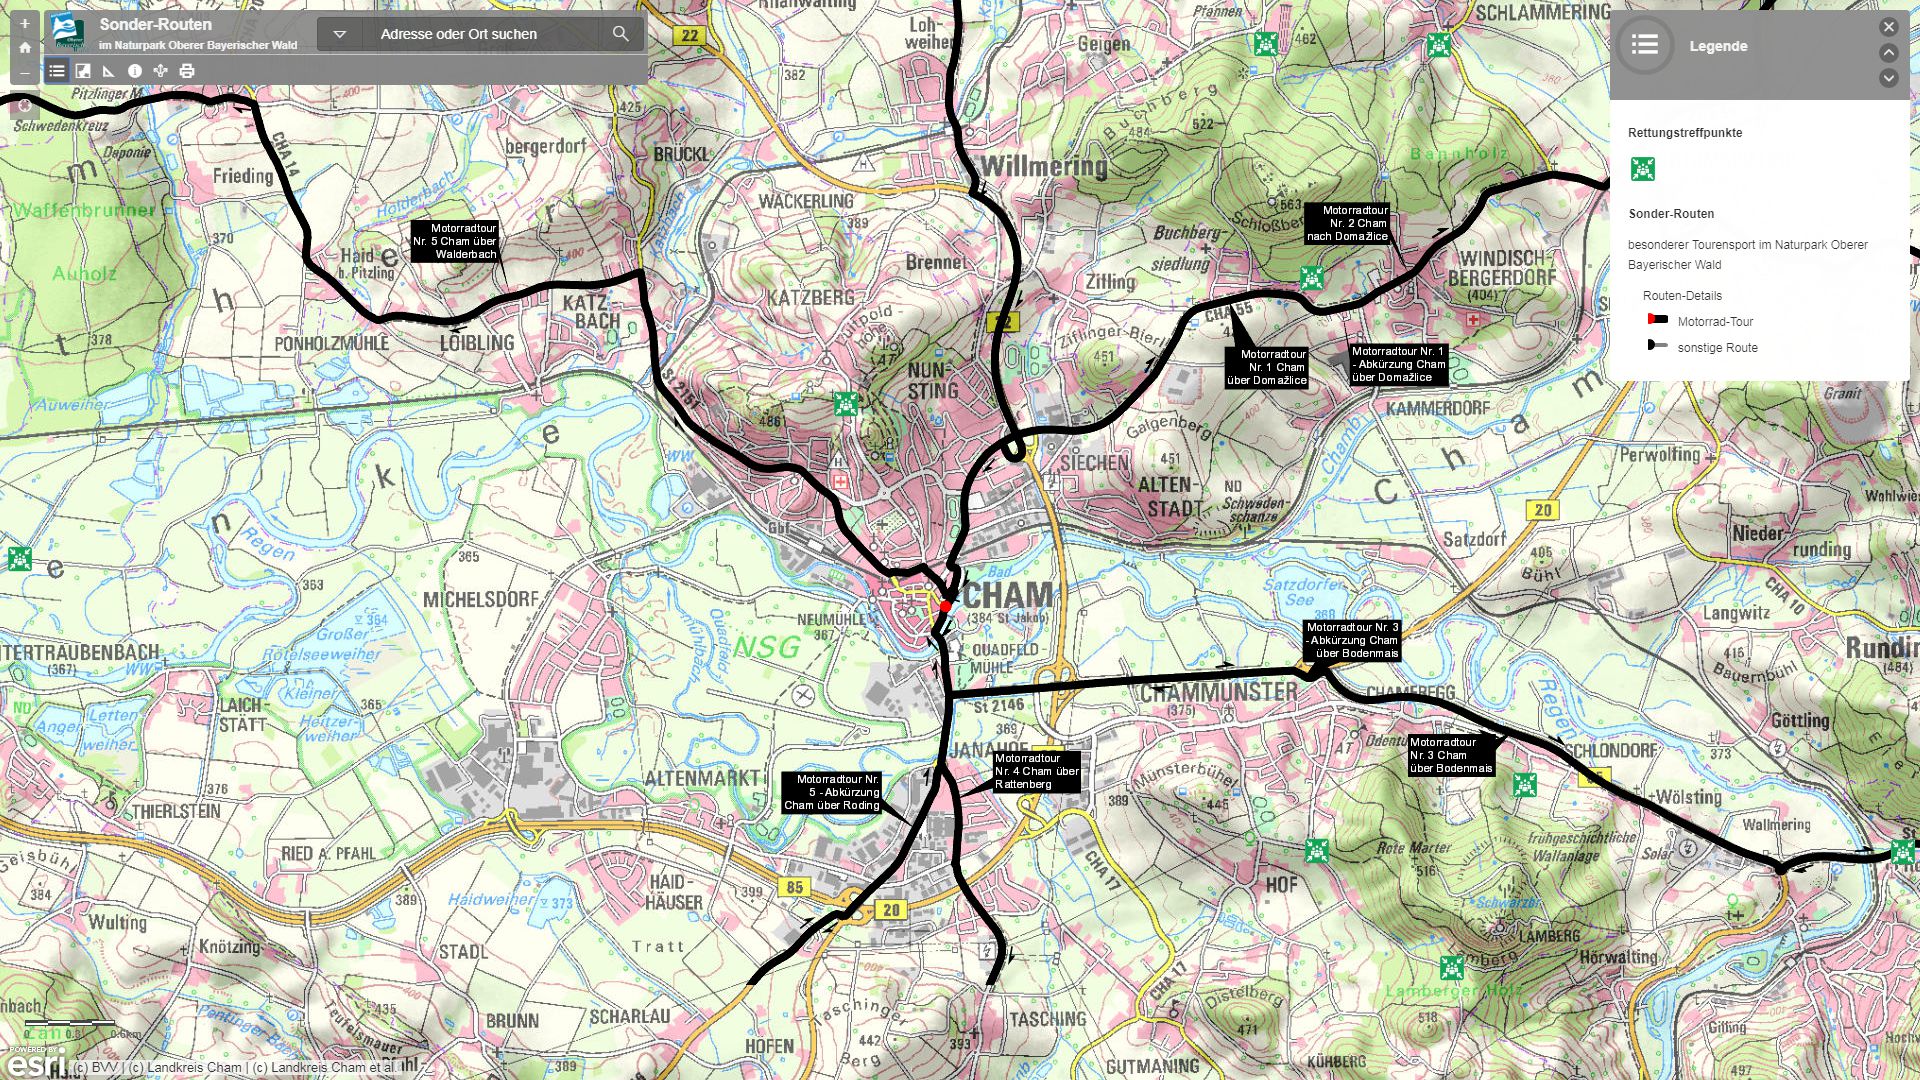 Zur externen GIS-Map Sonder-Routen unter arcgis.com